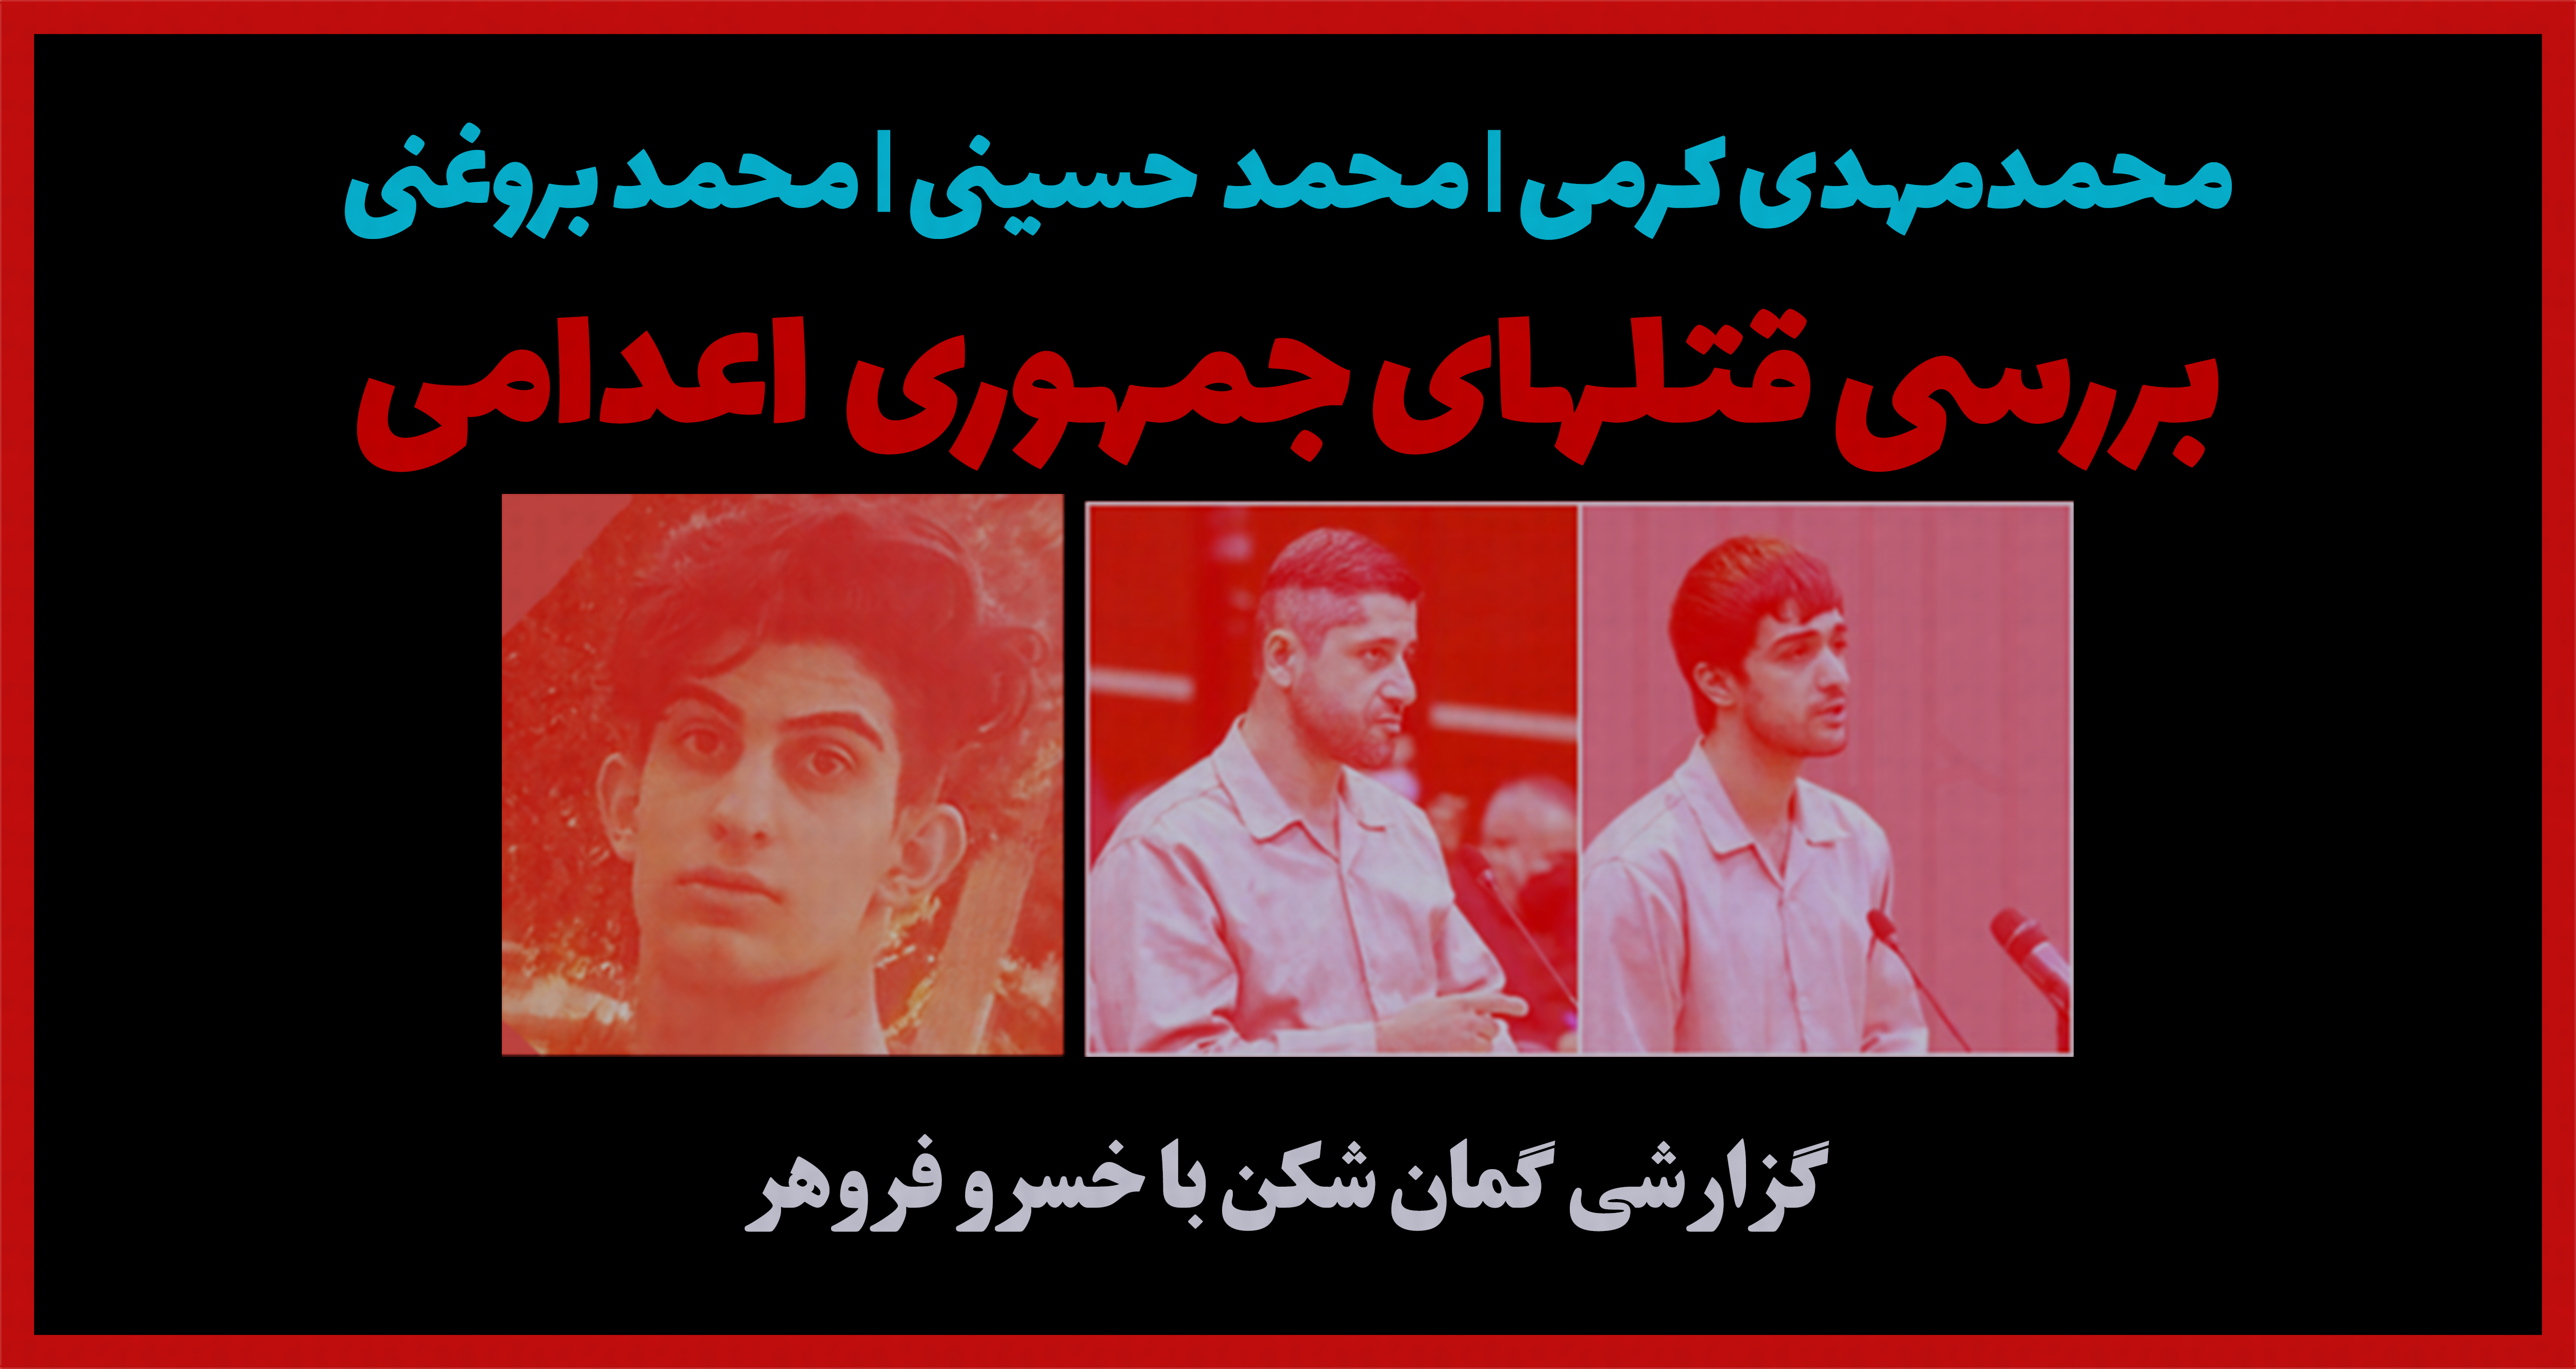 محمدمهدی کرمی | محمد حسینی | محمد بروغنی ... بررسی قتلهای جمهوری اعدامی |خسرو فروهر